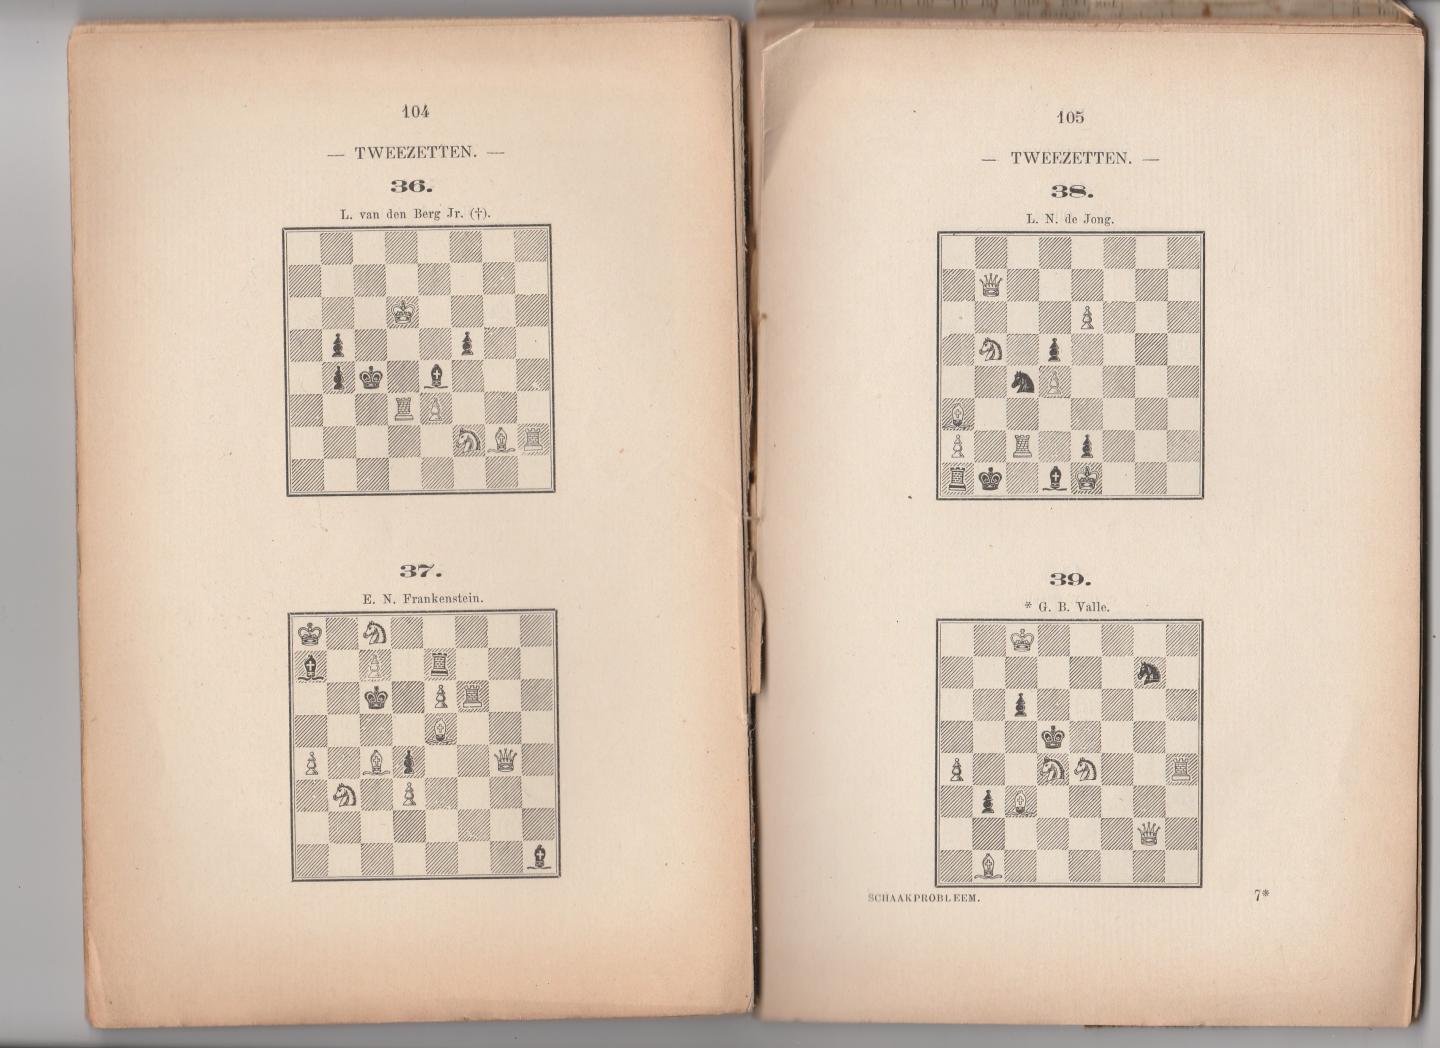 Hertog, H.J. den - Het schaakprobleem theorie en practijk